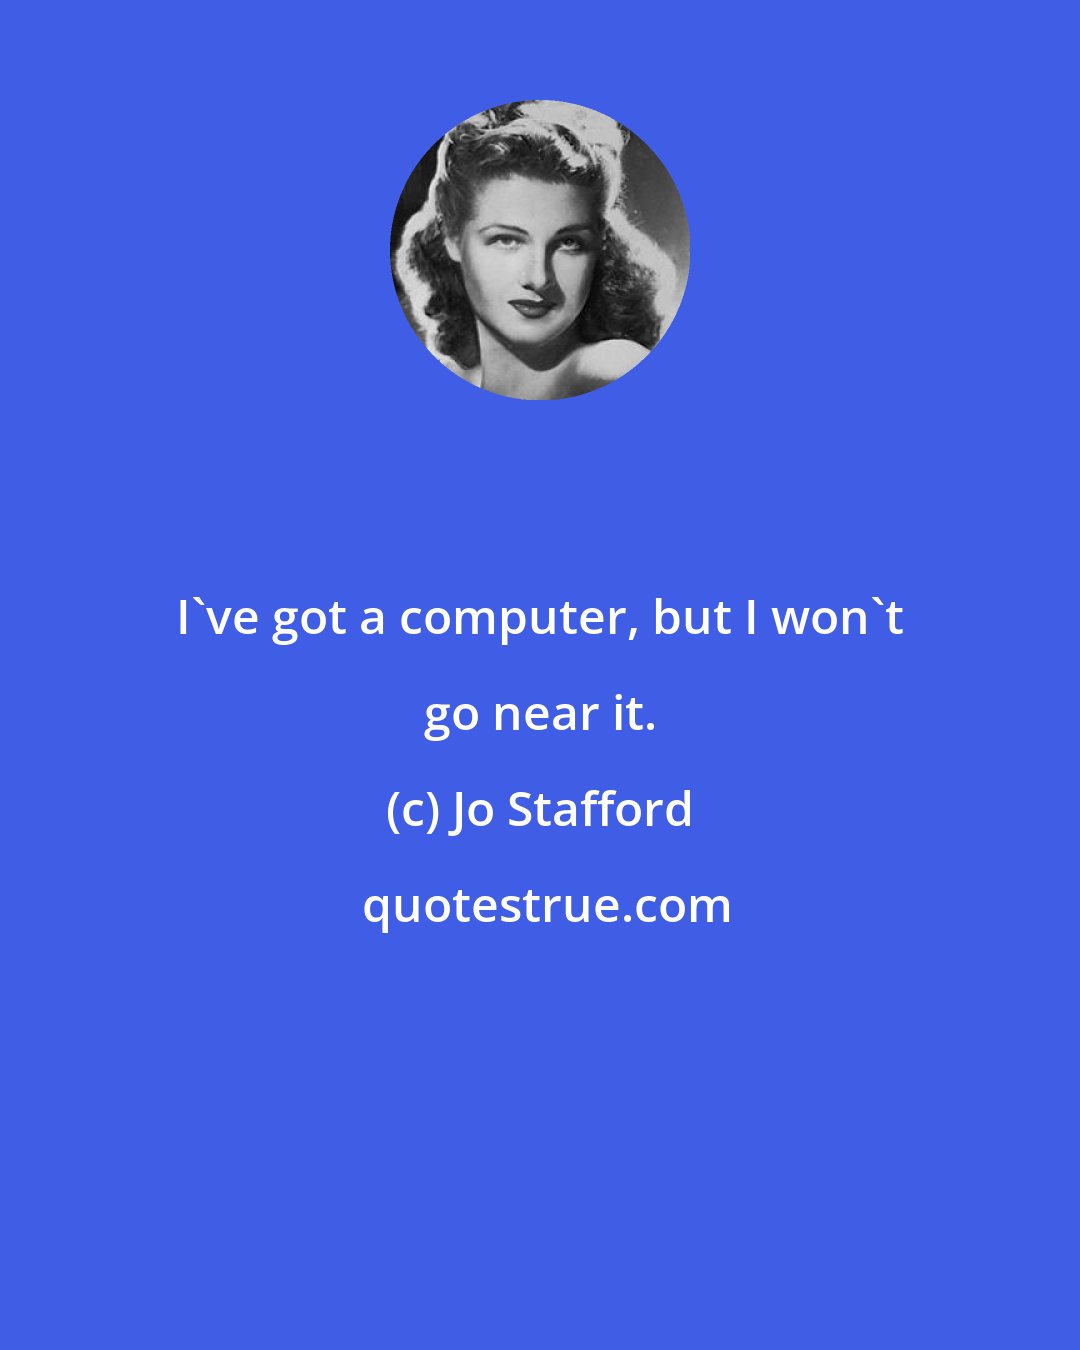 Jo Stafford: I've got a computer, but I won't go near it.